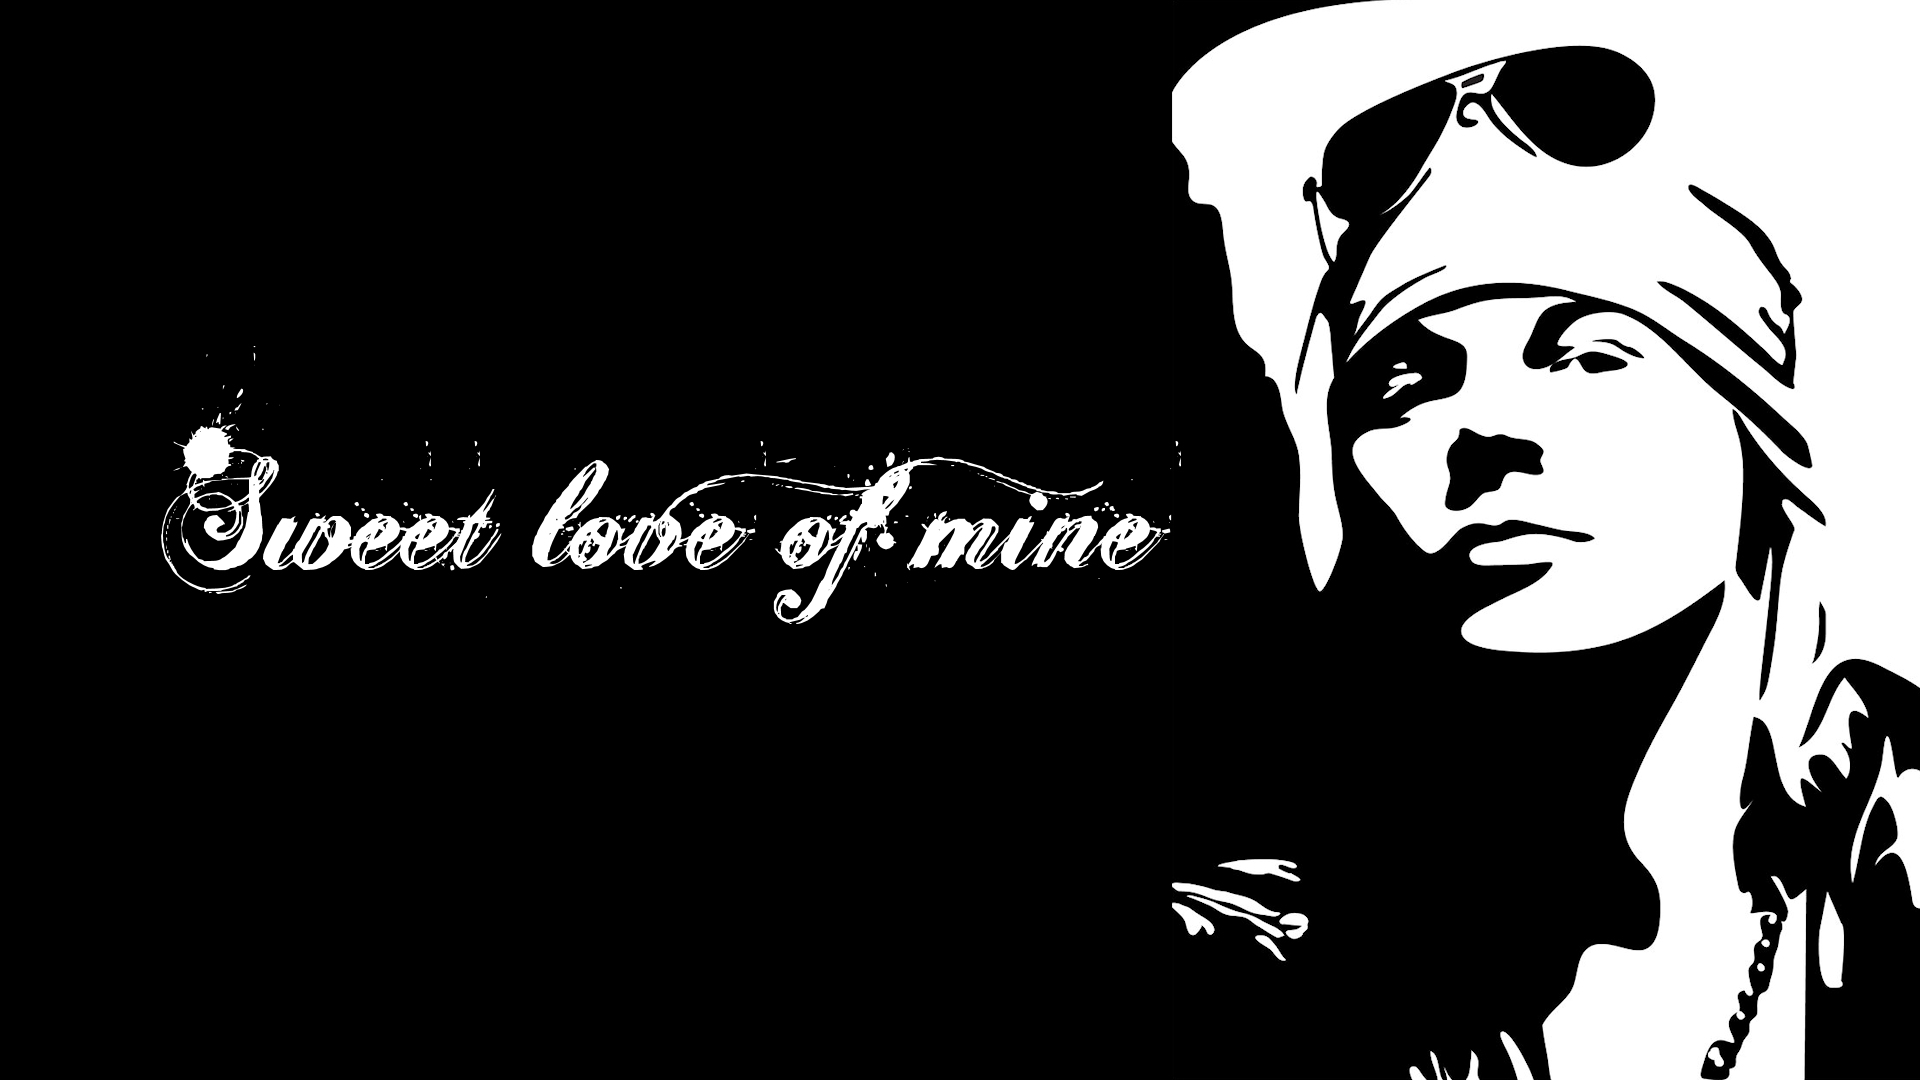 Sweet love of mine - Axl Rose Wallpaper (32291930) - Fanpop